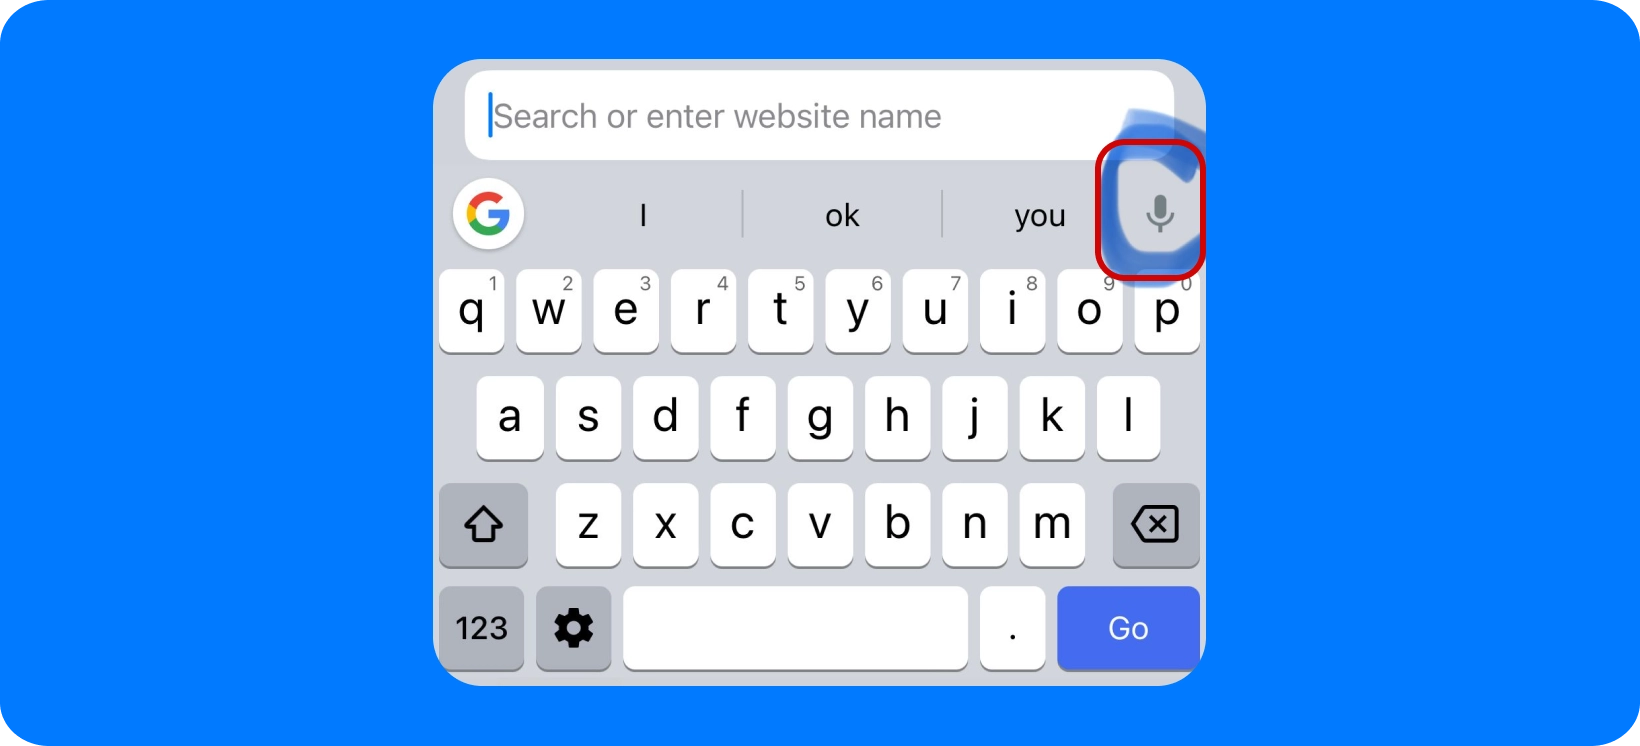 एक सैमसंग स्मार्टफोन पकड़े हुए एक हाथ जो आवाज खोज विकल्प के साथ Google खोज बार प्रदर्शित करता है।